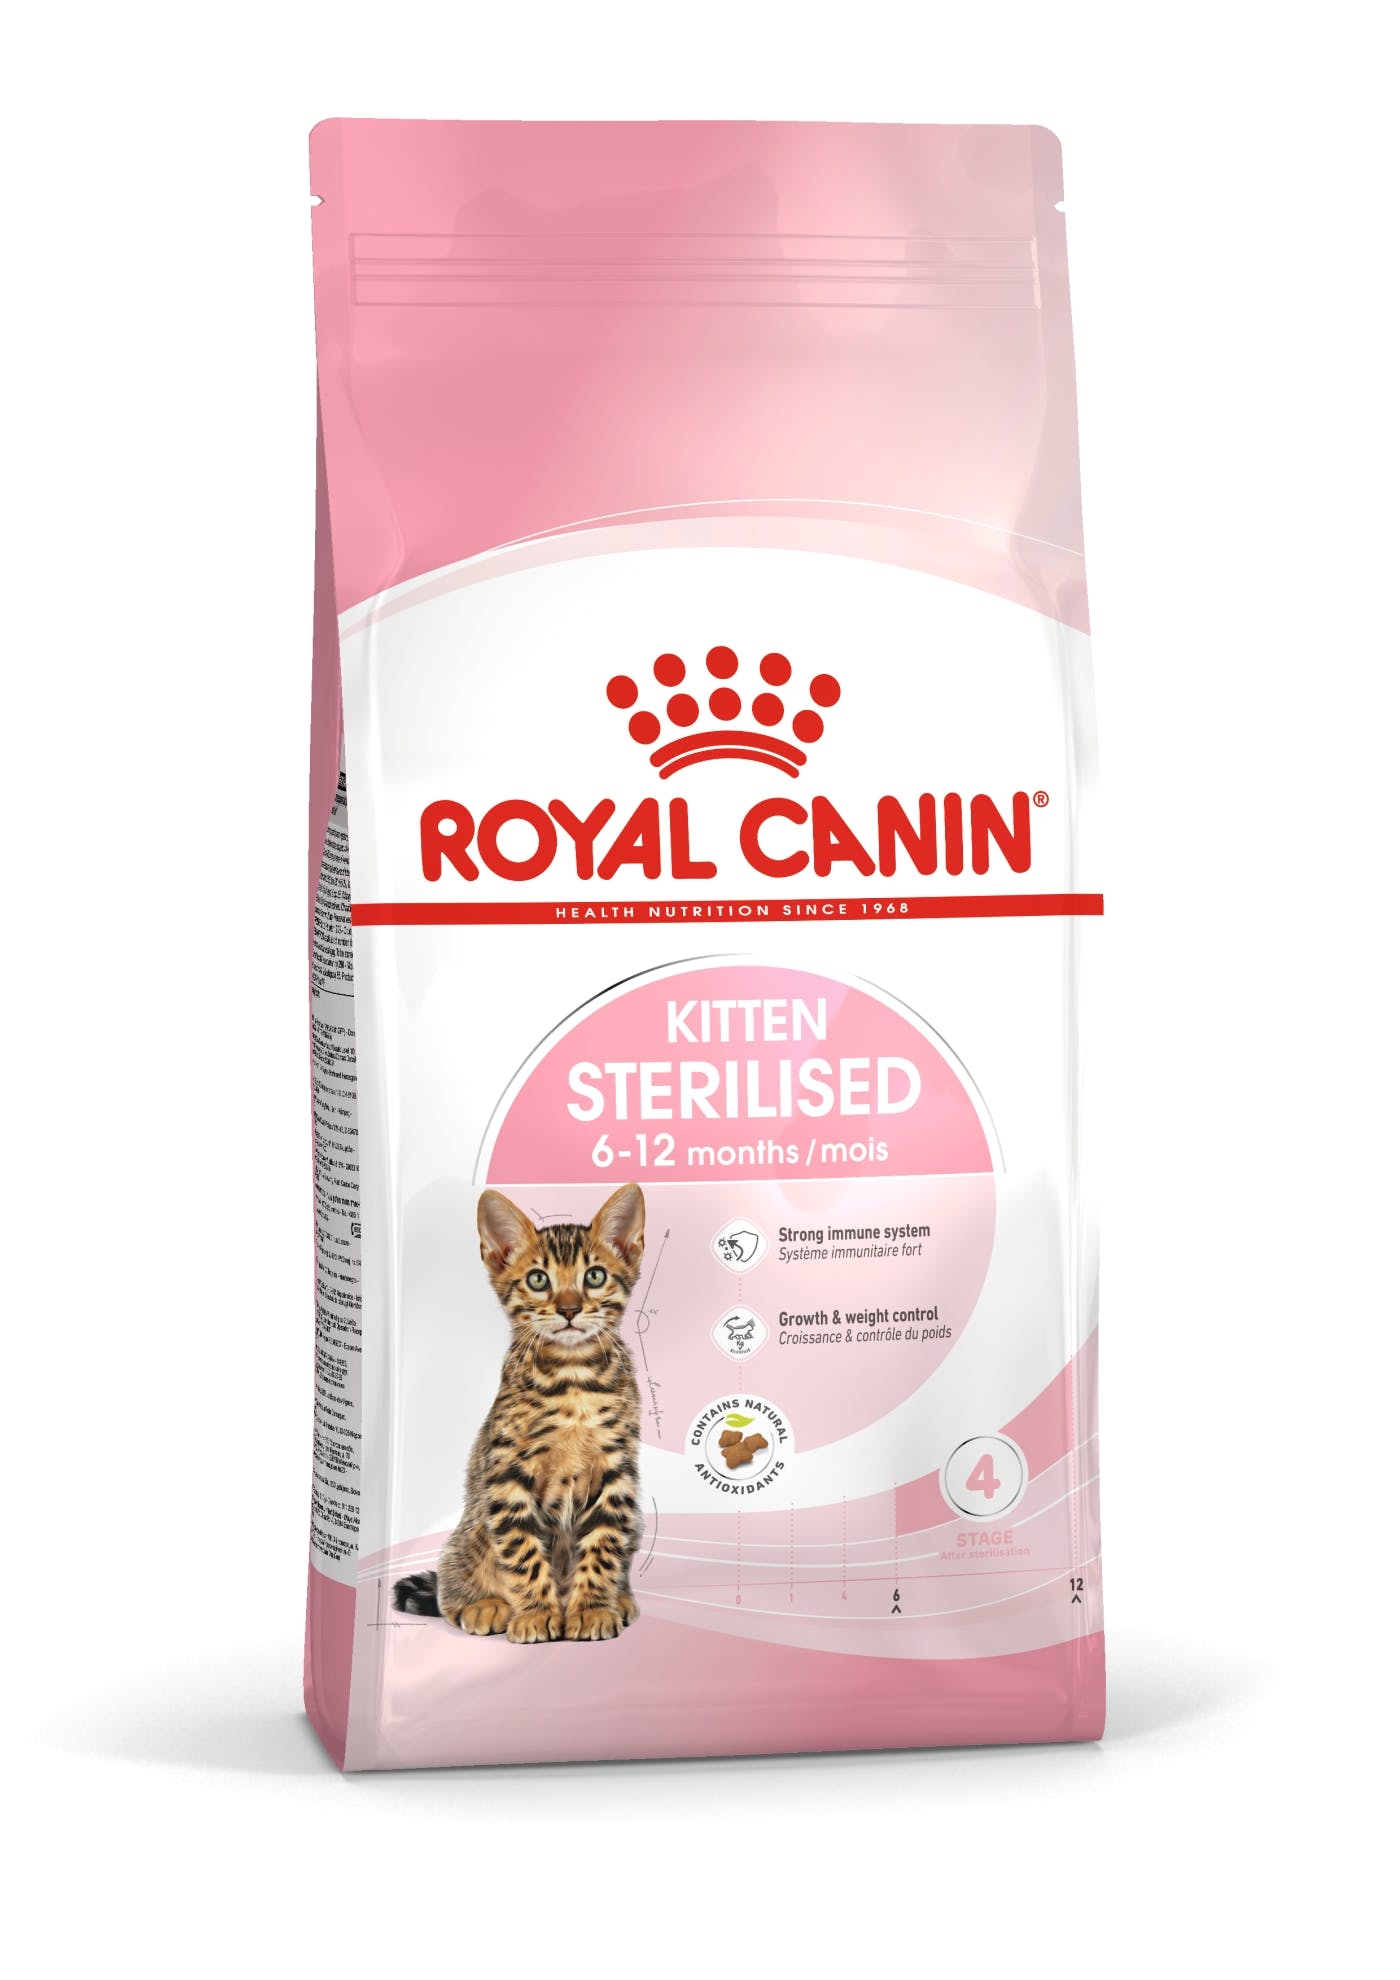 Billede af Royal Canin Kitten Sterilised til steriliserede/kastrerede killinger op til 12 måneder. 2kg.